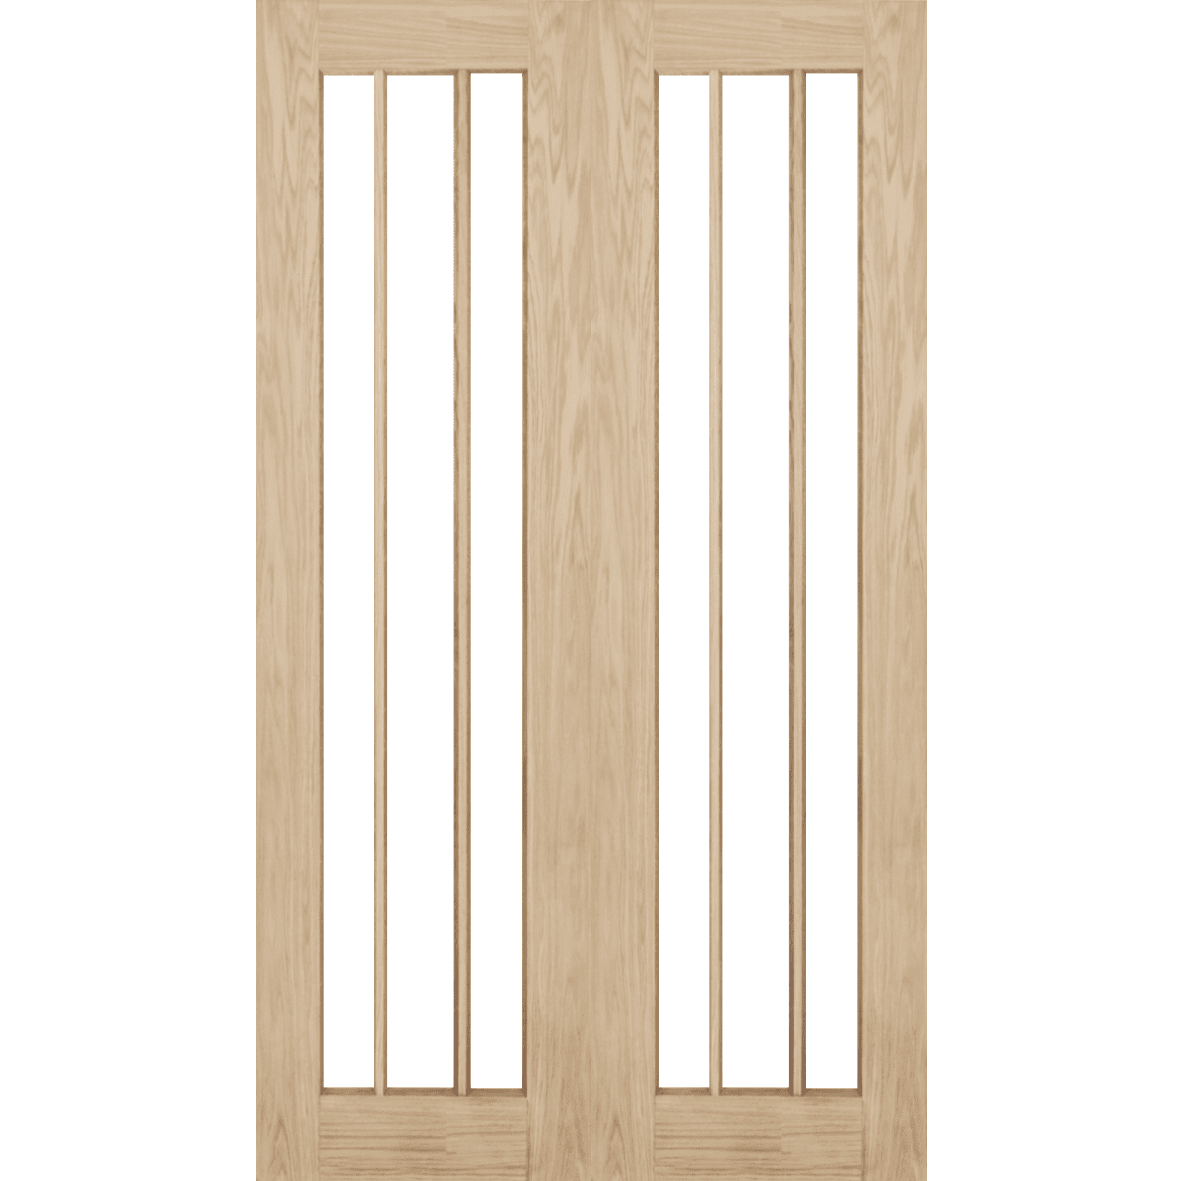 oak-langdale-clear-glass-rebated-internal-door-pair-green-tree-doors